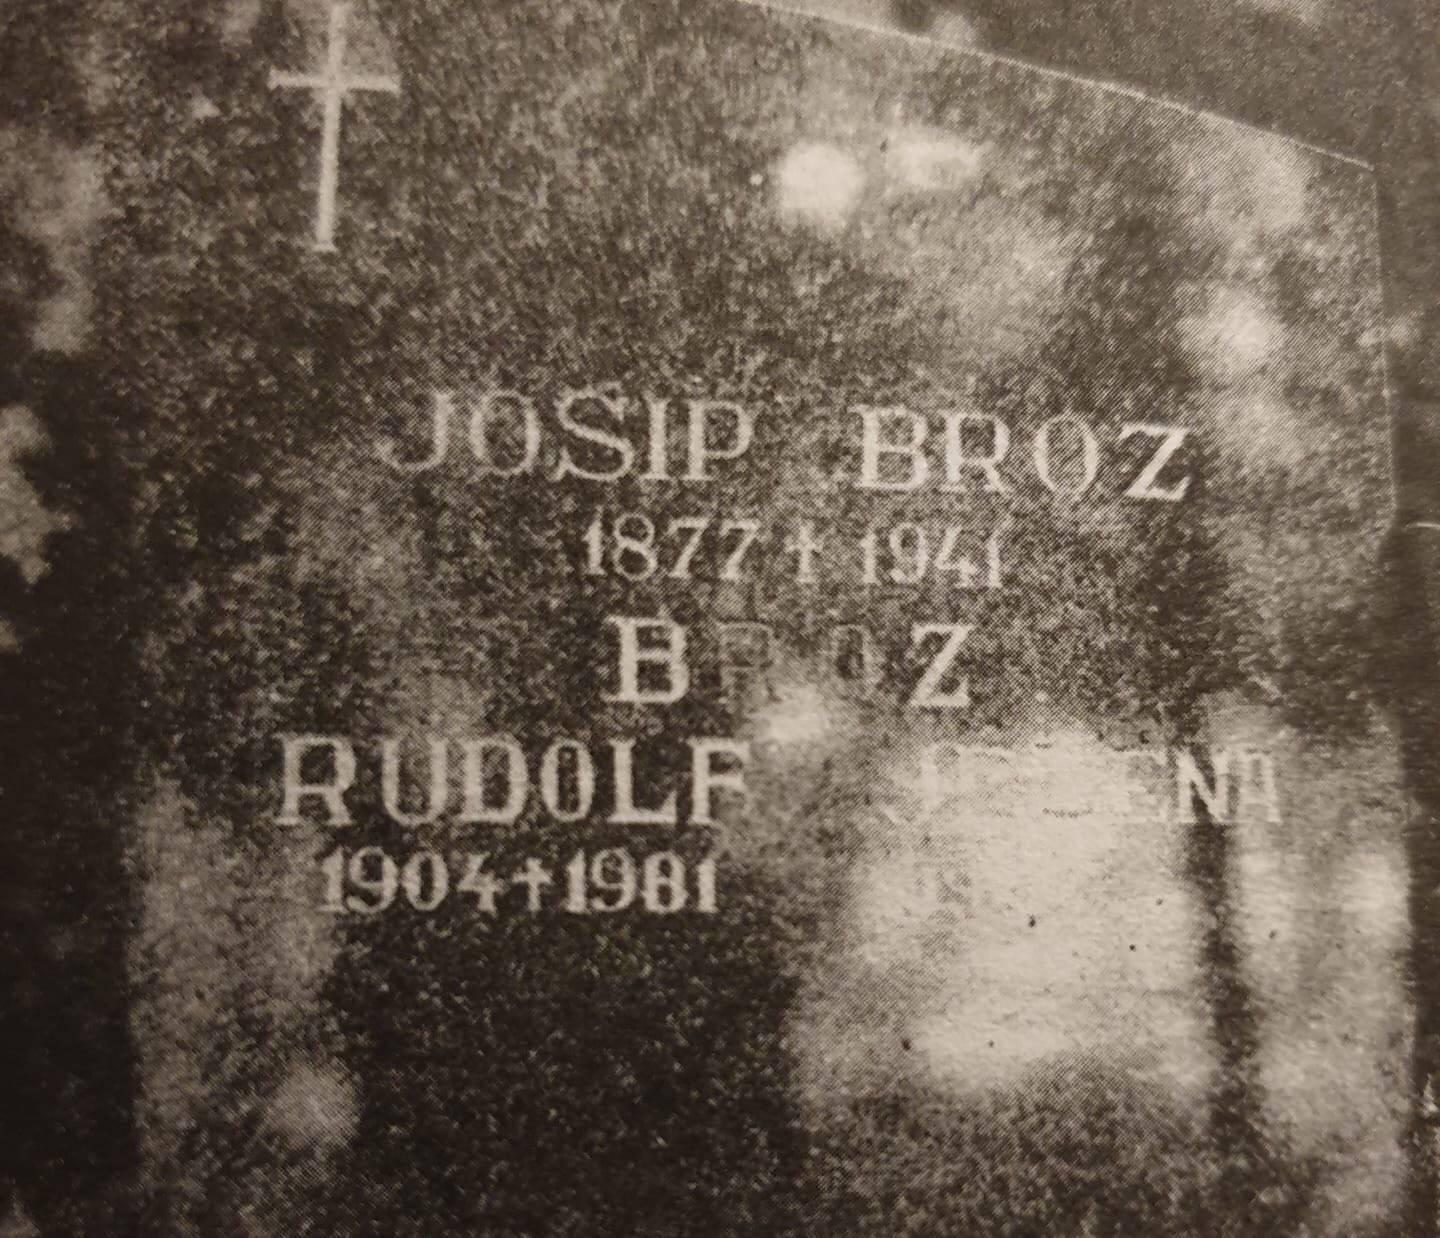 Прави Јосип Броз Тито је сахрањен у Земуну 1941!